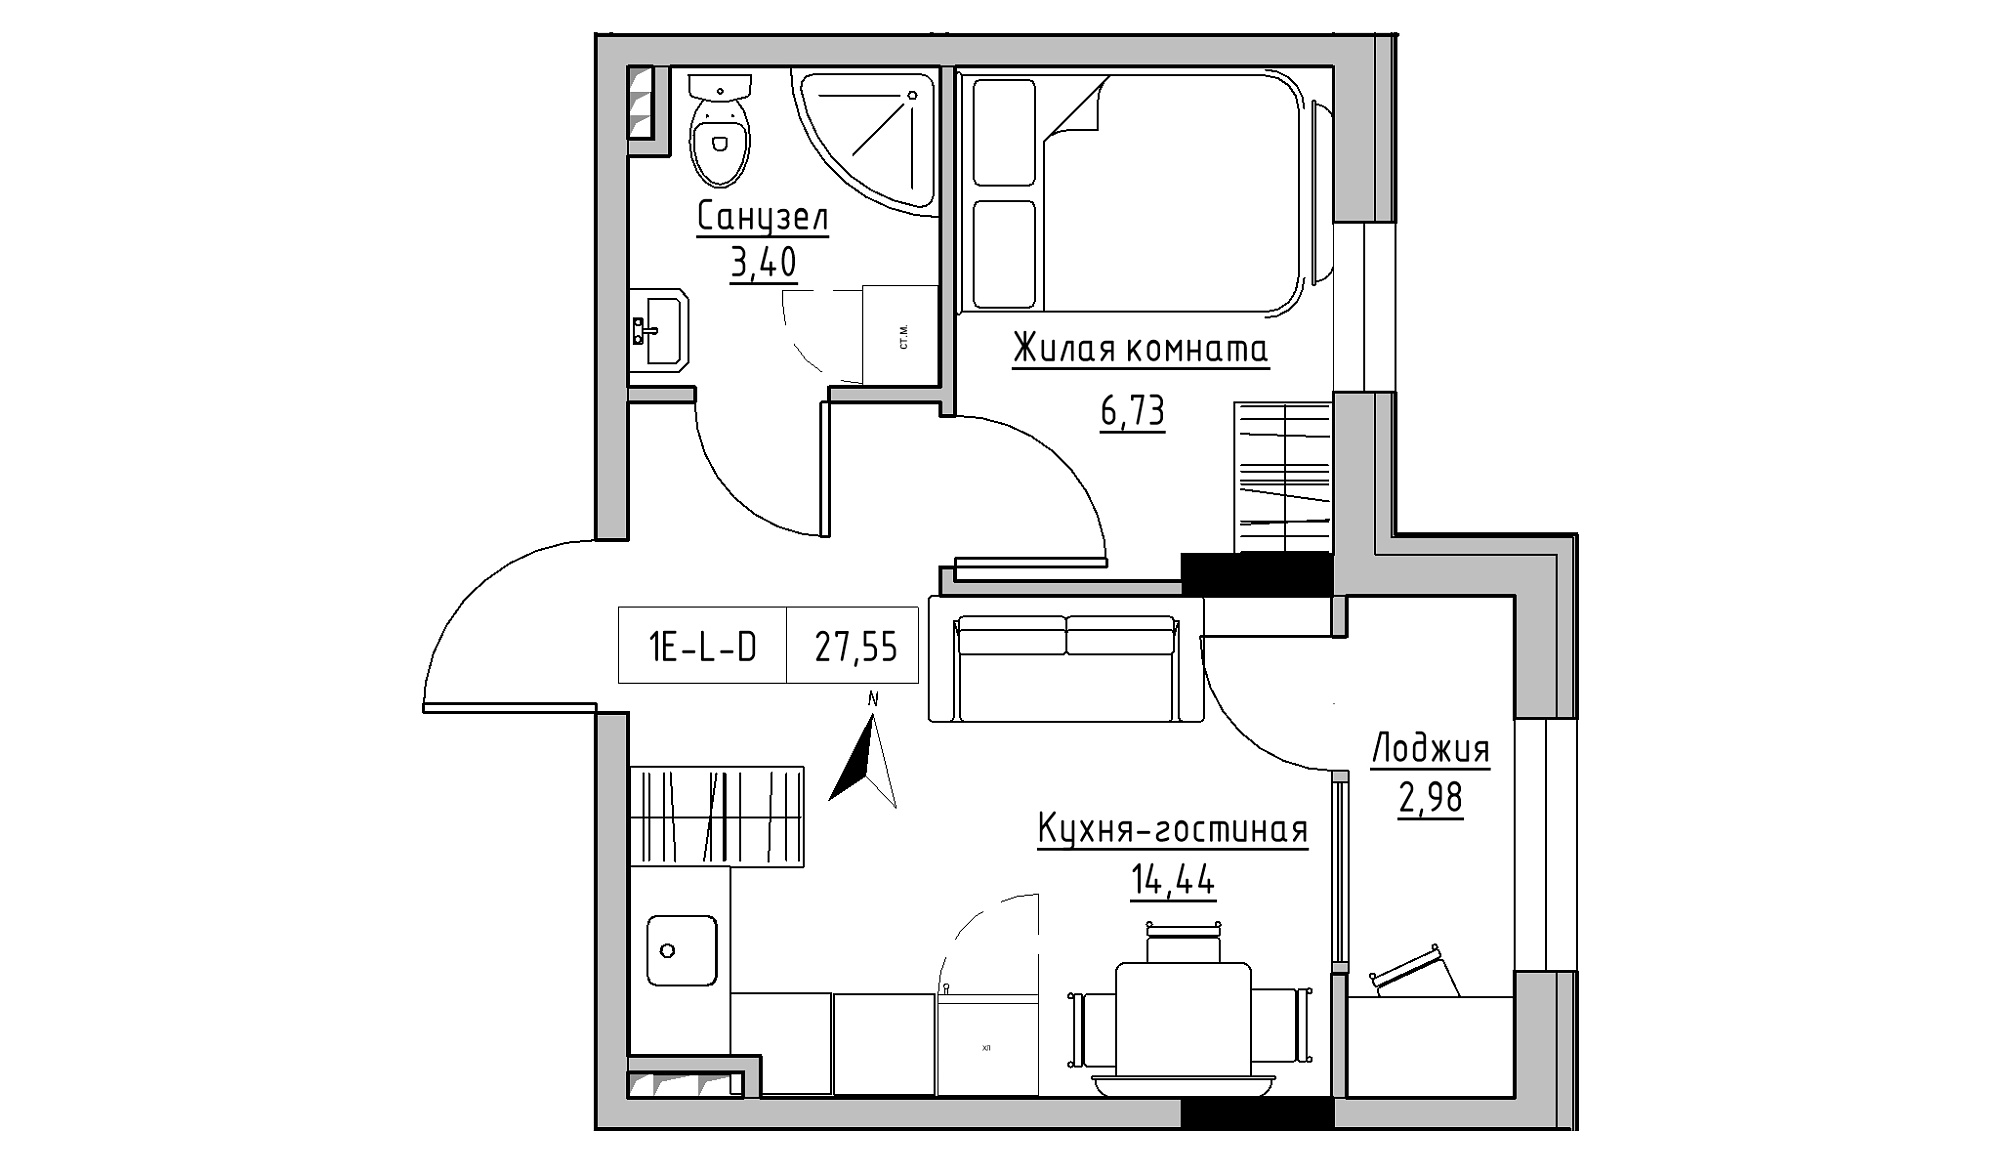 Планировка 1-к квартира площей 27.55м2, KS-025-02/0001.